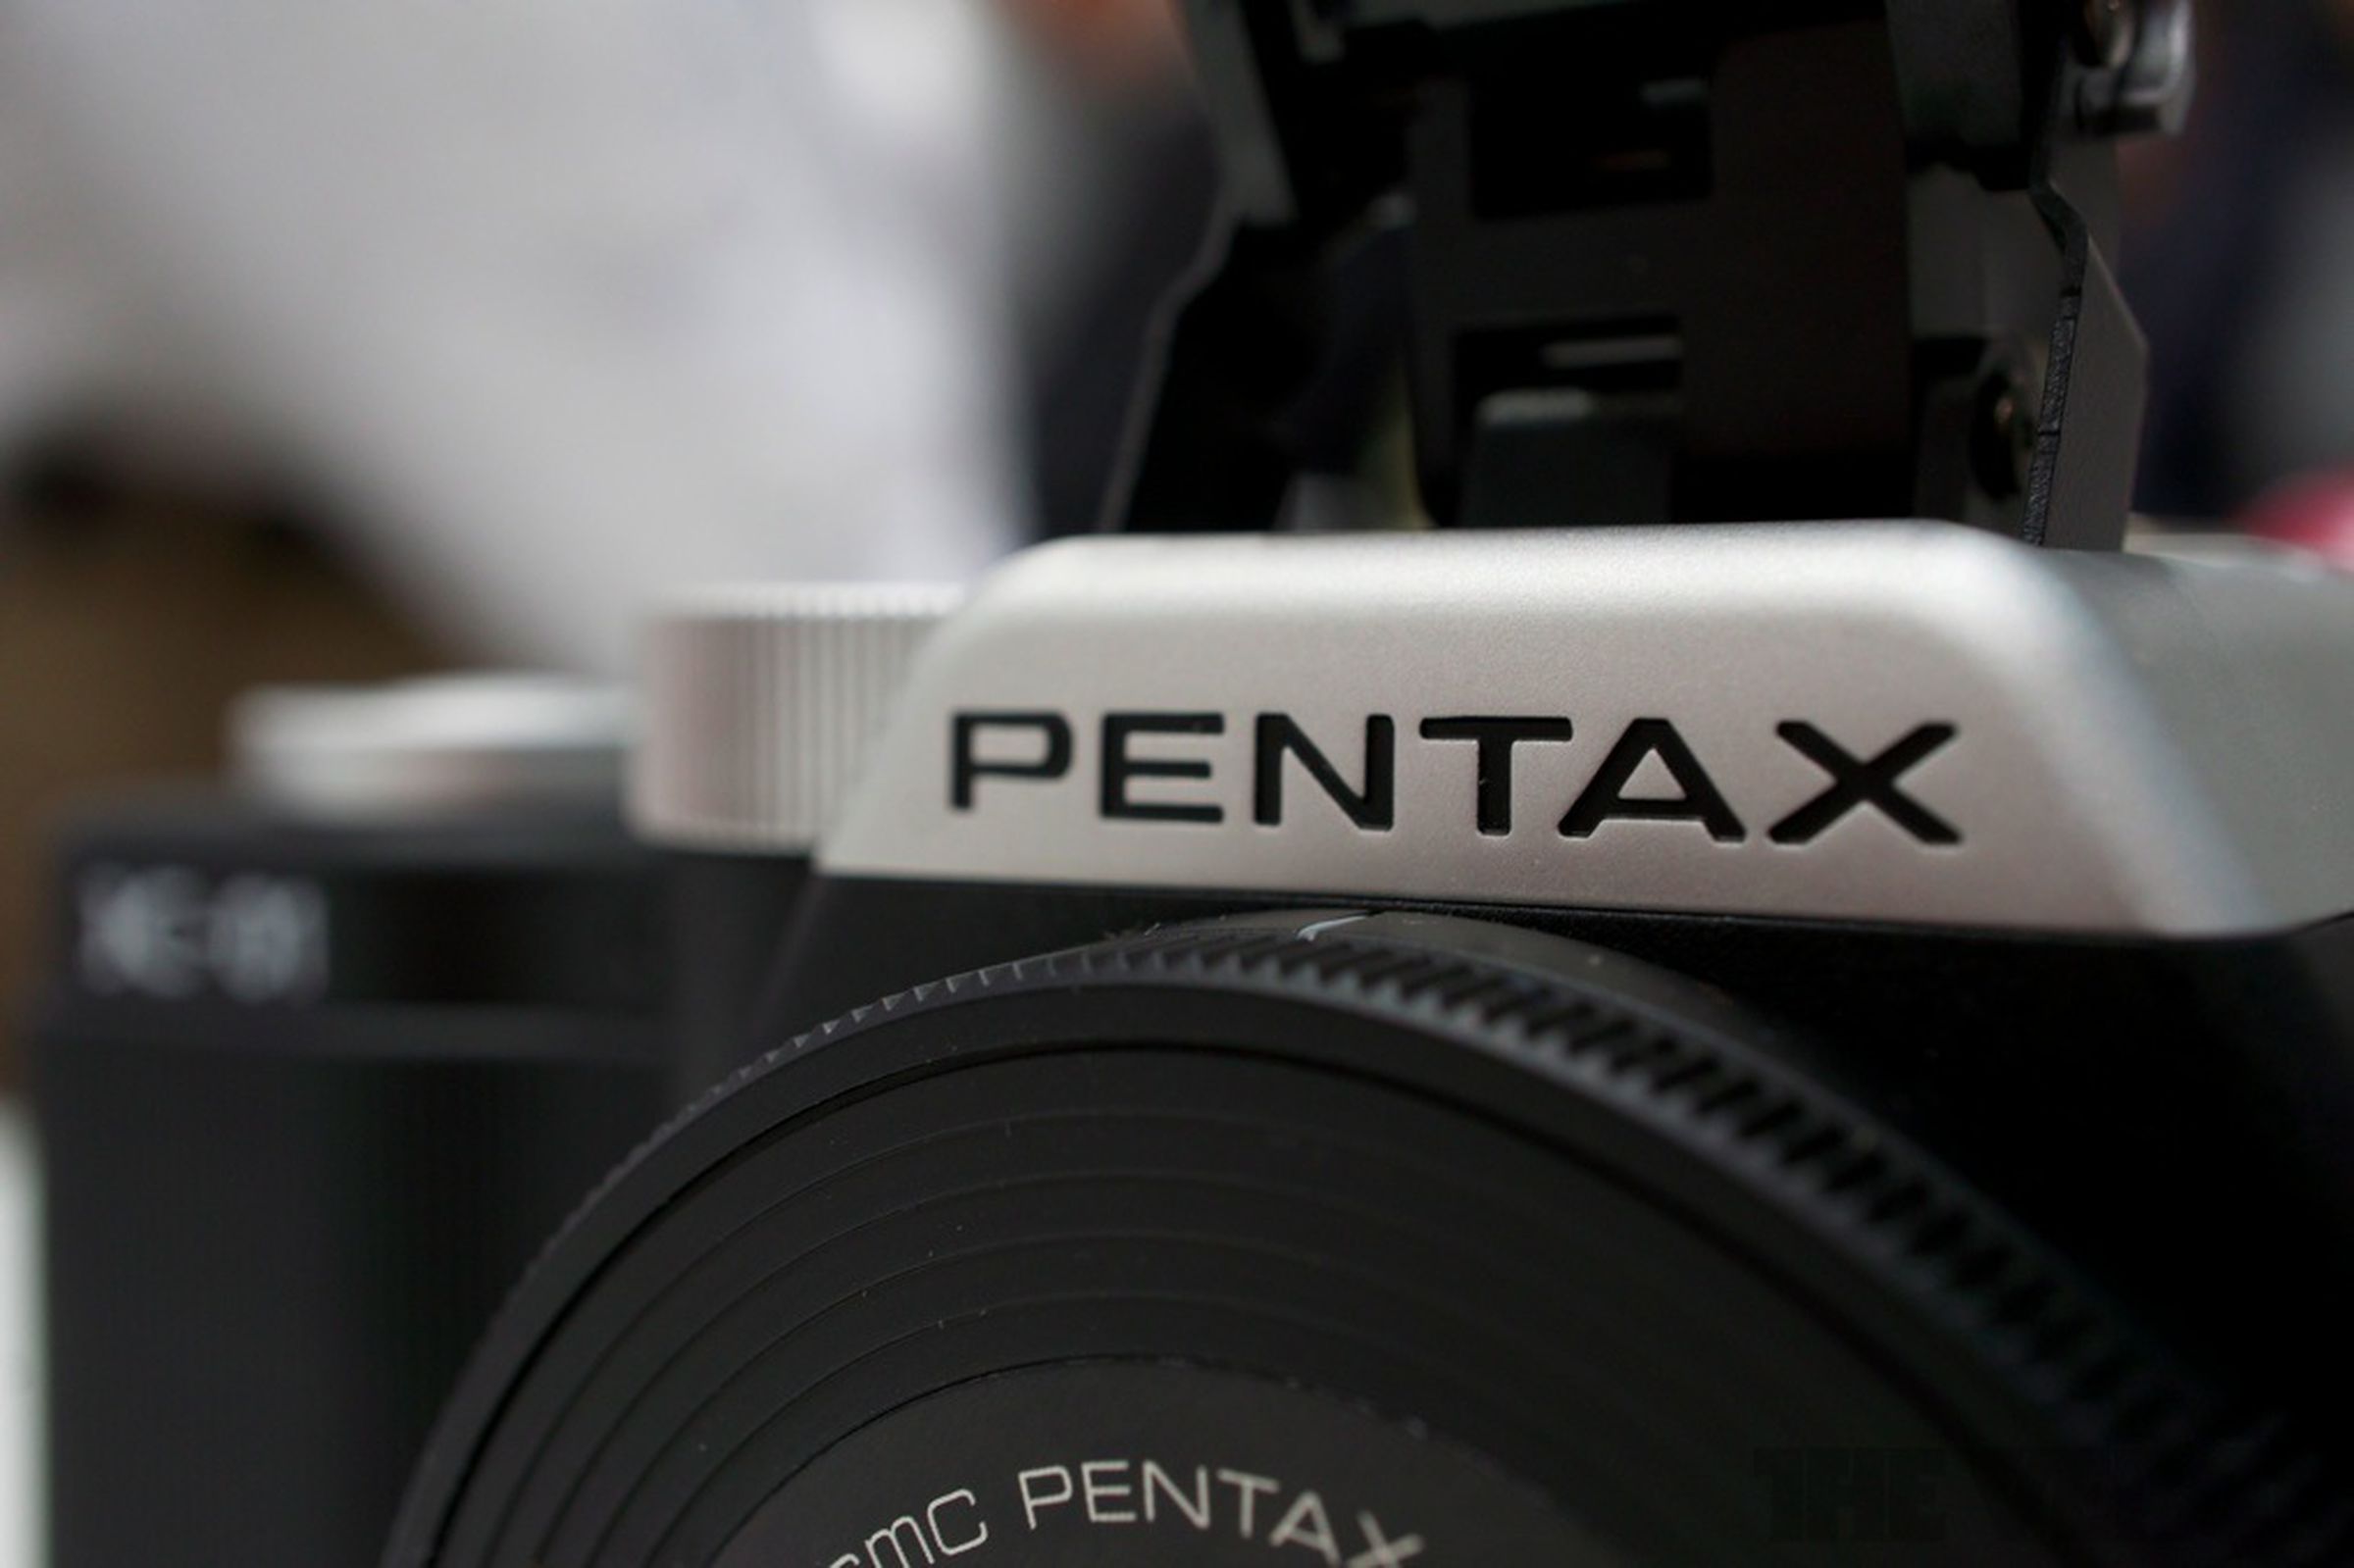 Pentax K-01 hands-on photos